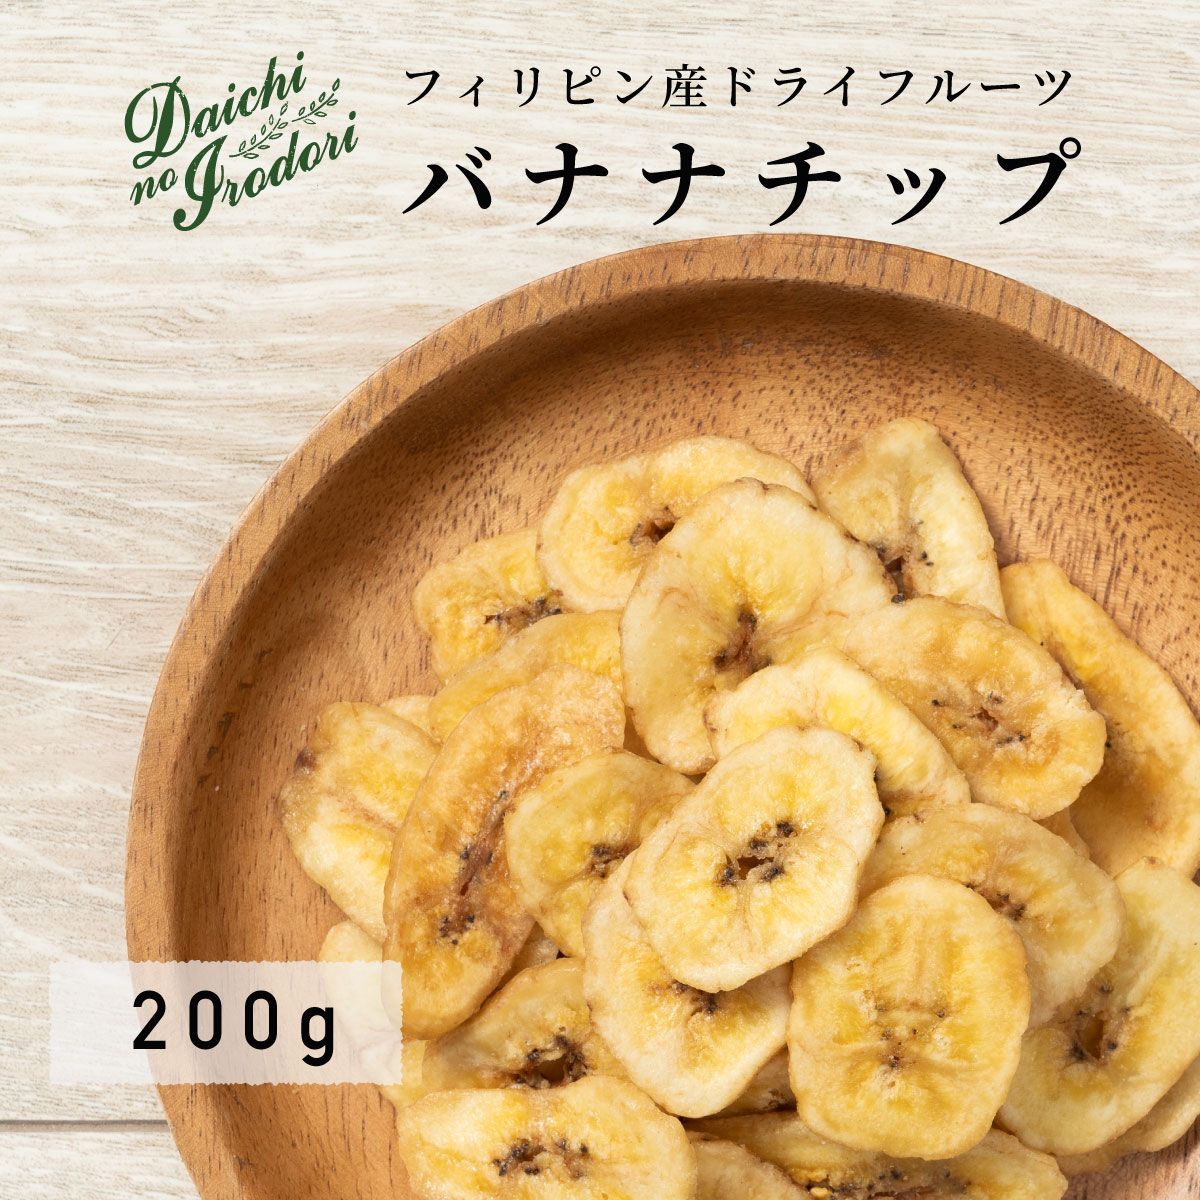 水果乾 香蕉片 200g x 1包 乾燥 香蕉 菓子 常溫保存 banana 點心 夾鏈袋裝 日本必買 | 日本樂天熱銷